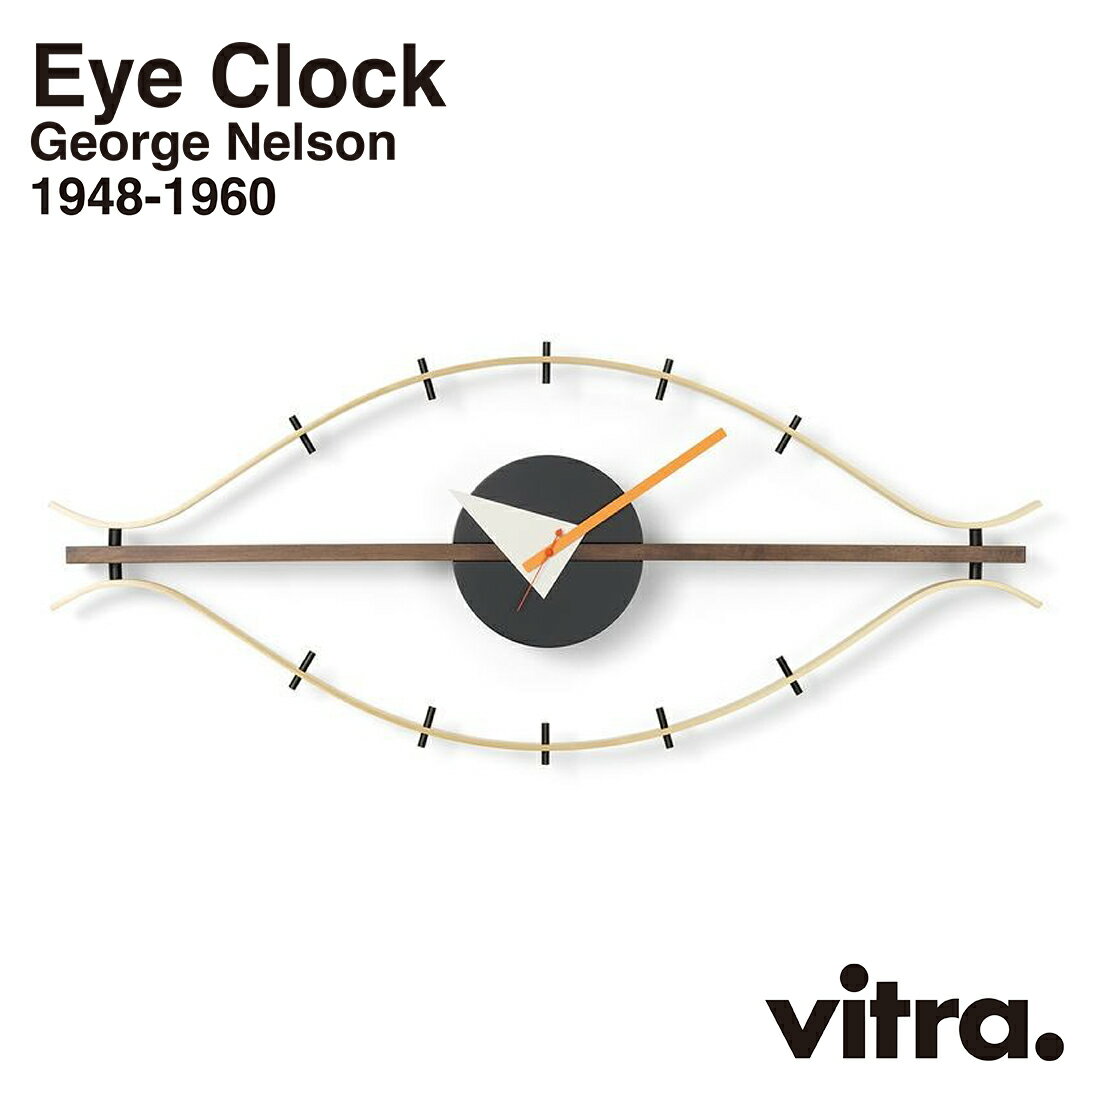 アイクロック 【店舗クーポン発行中】vitra ヴィトラ Eye Clock アイクロック Wall Clocks ウォールクロック GeorgeNelson ジョージ・ネルソン 時計 掛時計 インテリア 北欧 スイス